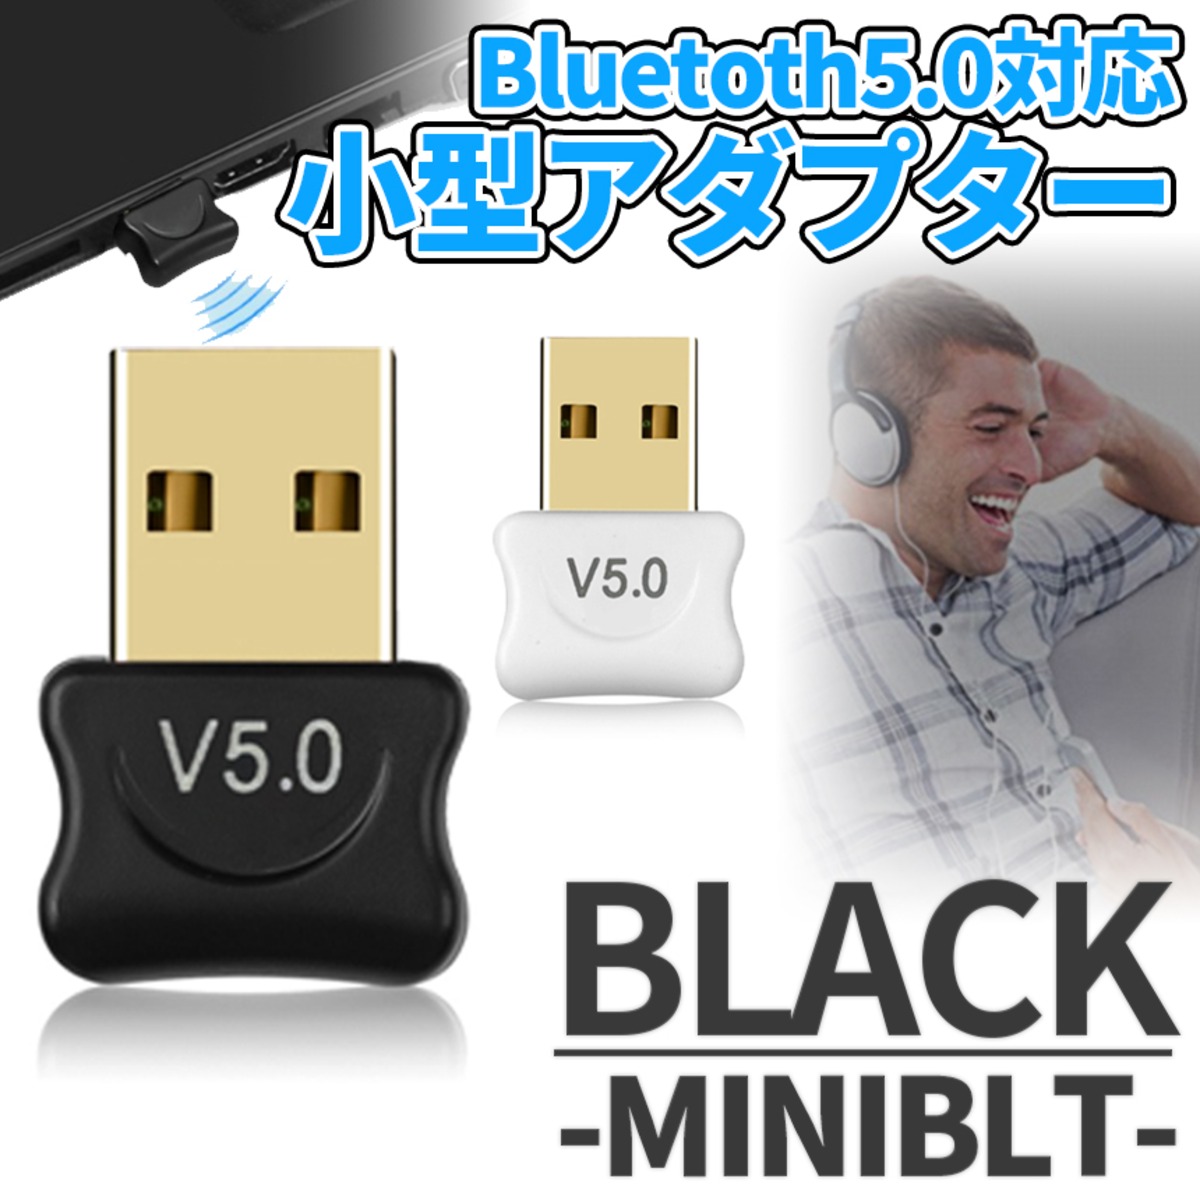 Mindre end mest svømme Bluetooth 5.0 アダプタ ブラック USB 無線 ドングル 小型 ブルートゥース ワイヤレス ノート PC パソコン iPad マウス  キーボード ヘッドホン MINIBT-BK | palone